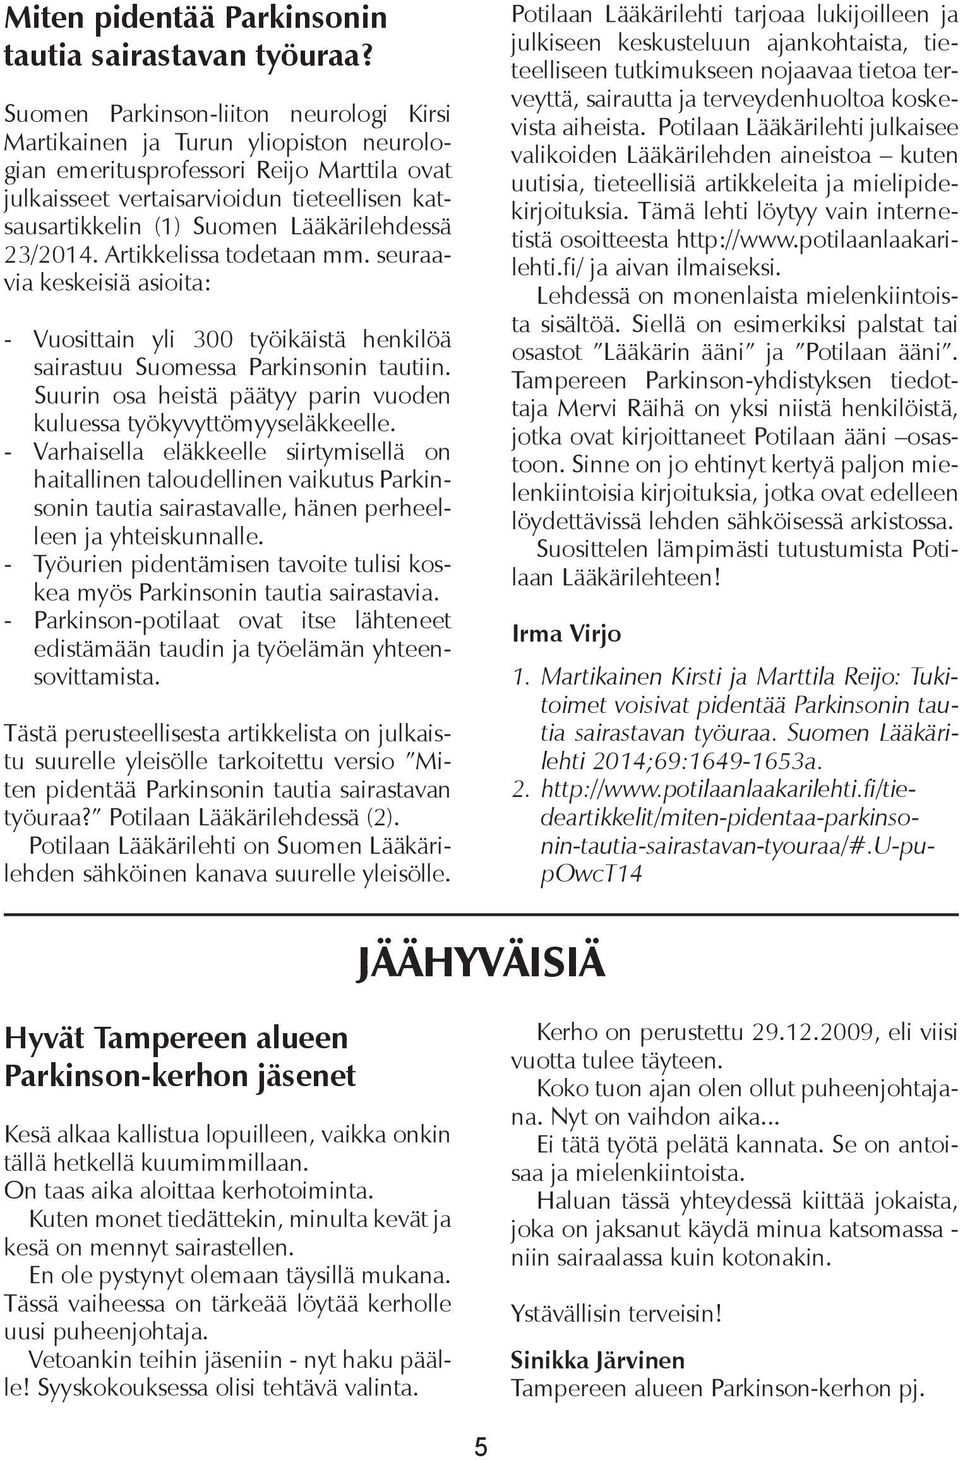 Lääkärilehdessä 23/2014. Artikkelissa todetaan mm. seuraavia keskeisiä asioita: - Vuosittain yli 300 työikäistä henkilöä sairastuu Suomessa Parkinsonin tautiin.